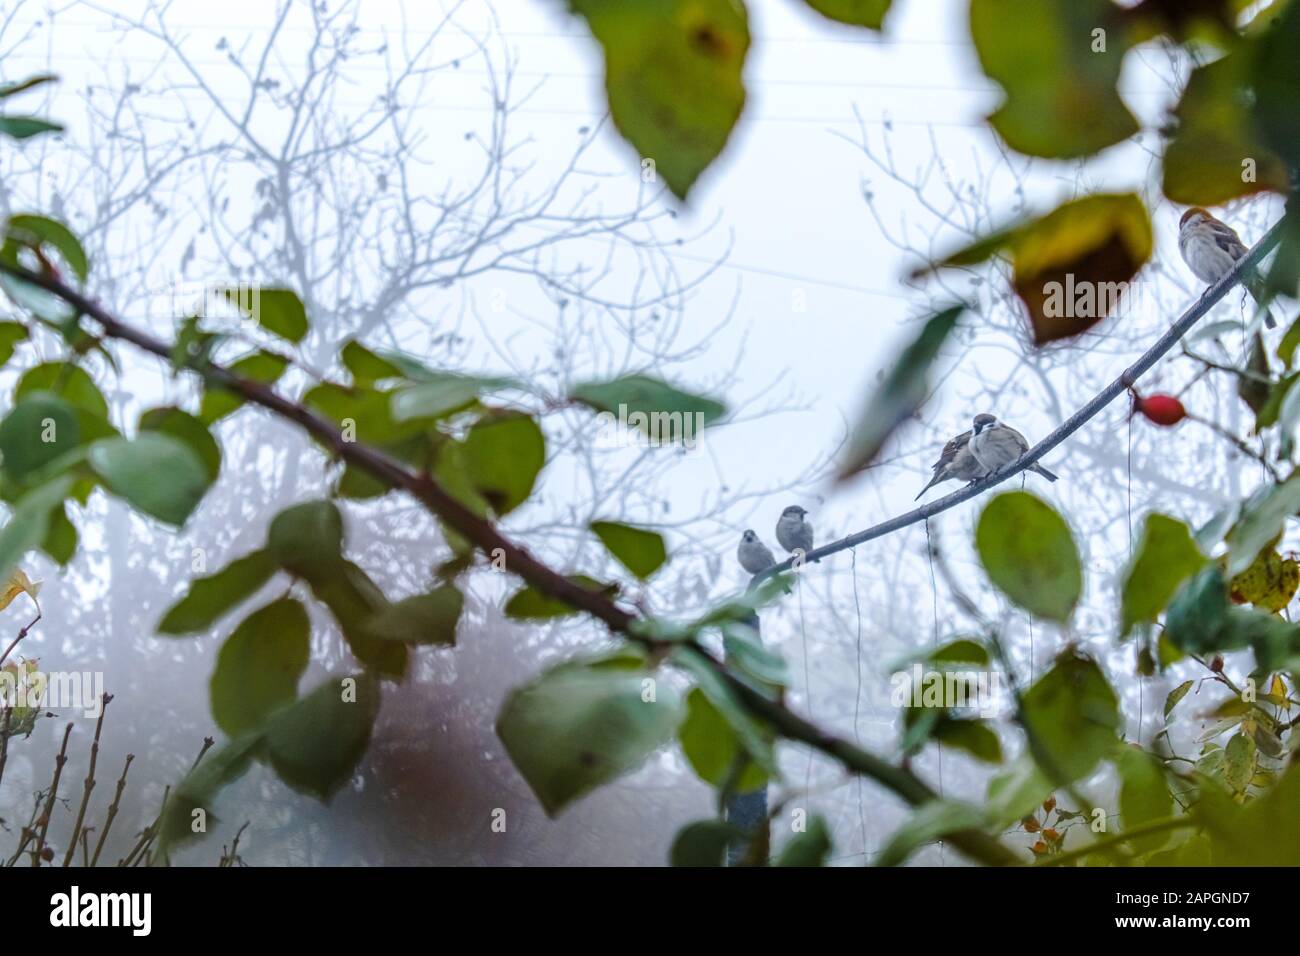 Unter den gelben und grünen Blättern sitzen im Nebel kleine Sparren. Nahaufnahme. Stockfoto